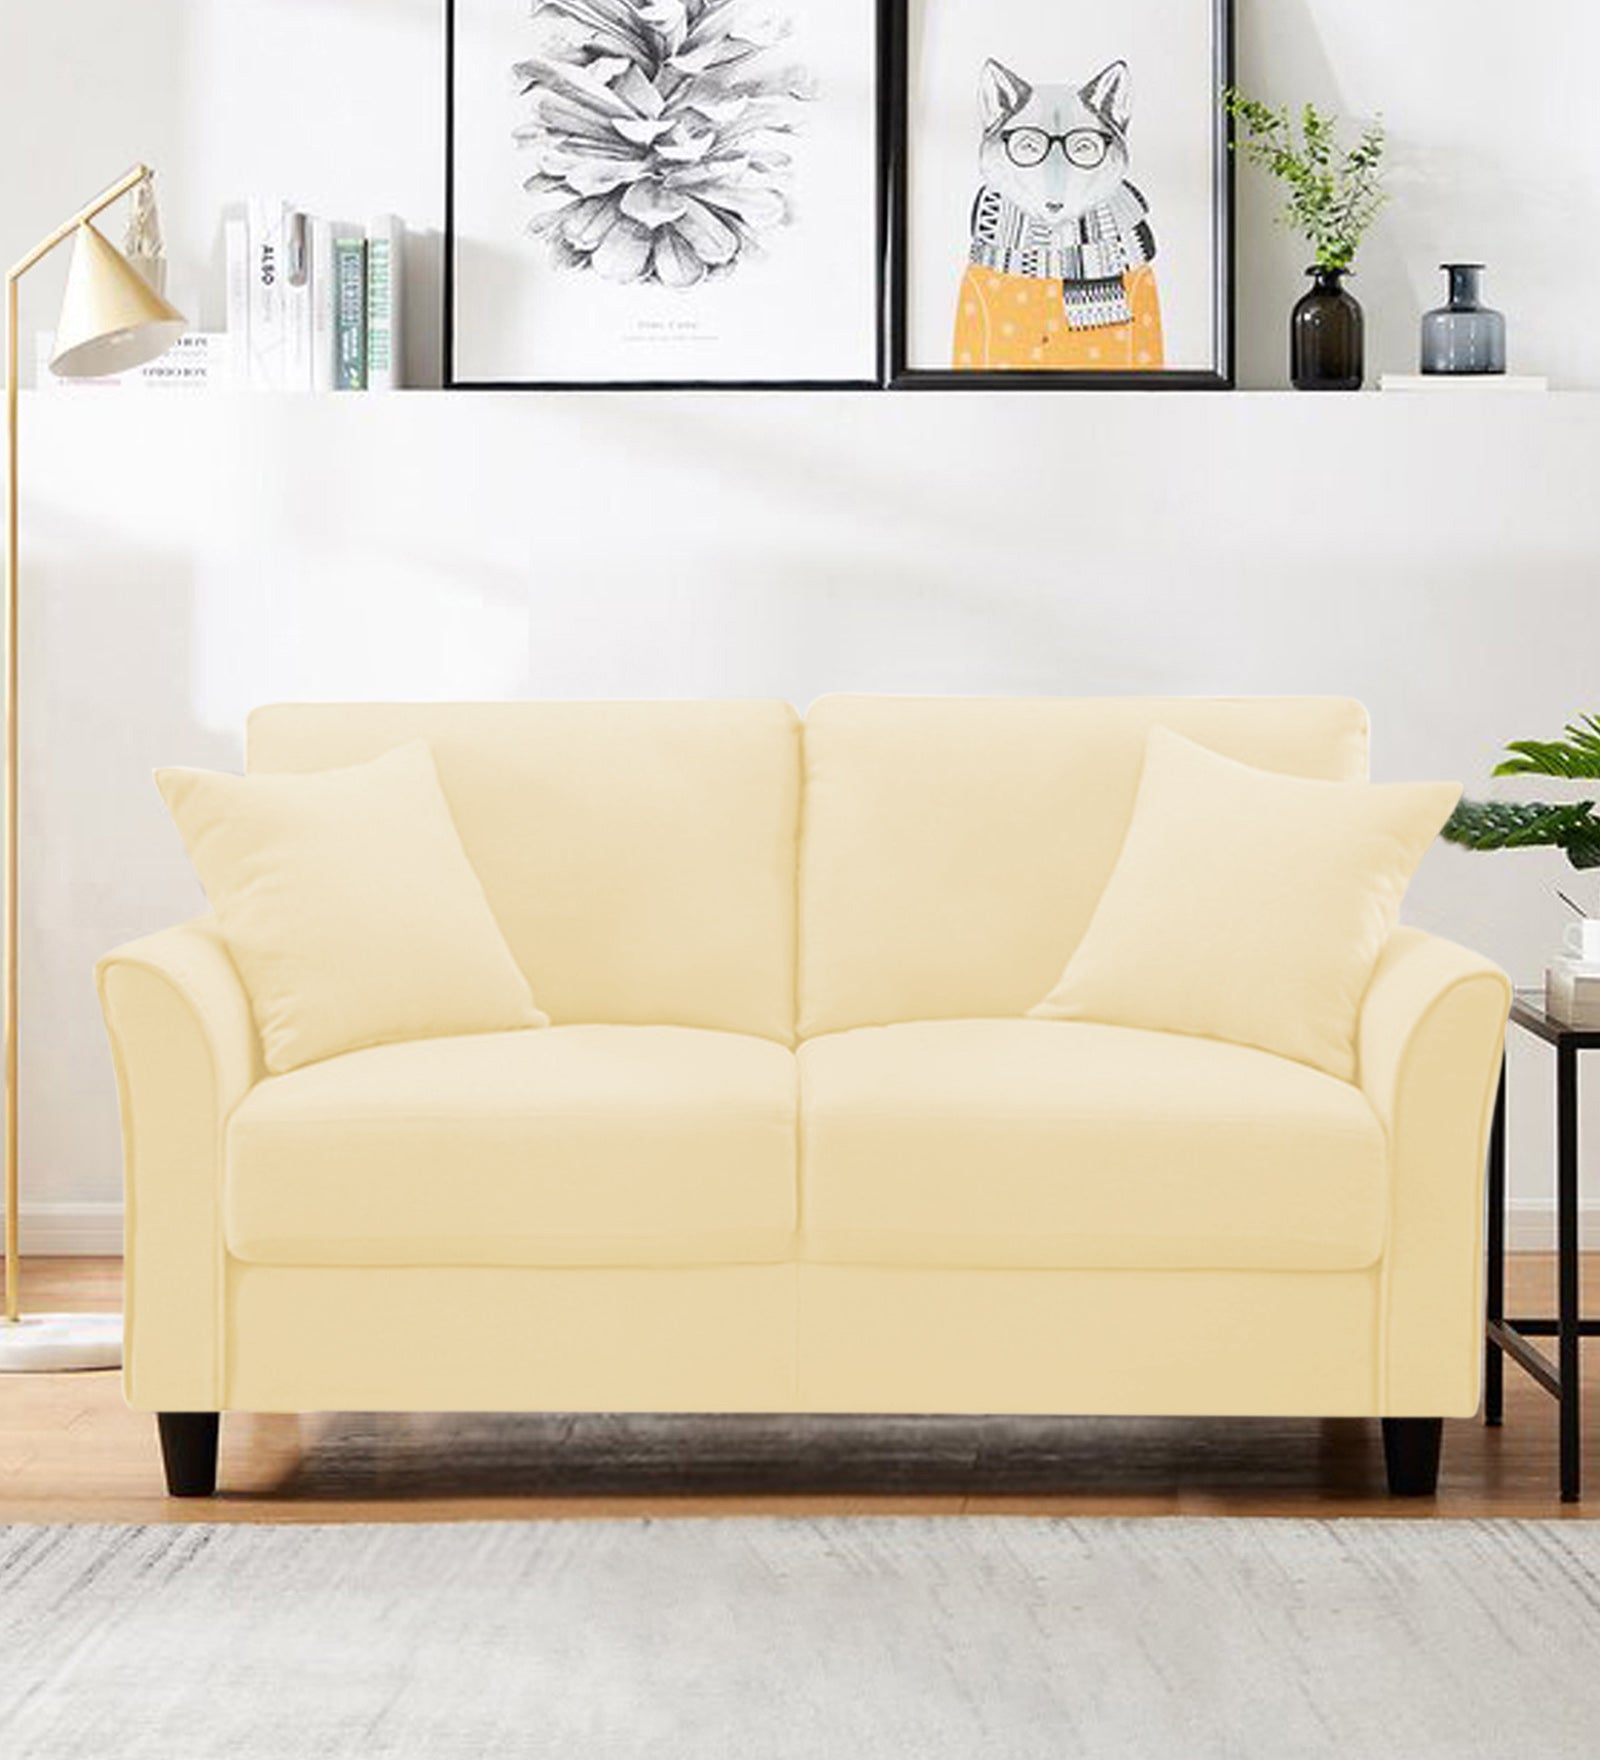 Daroo Velvet 2 Seater Sofa In Sandy Beige Colour